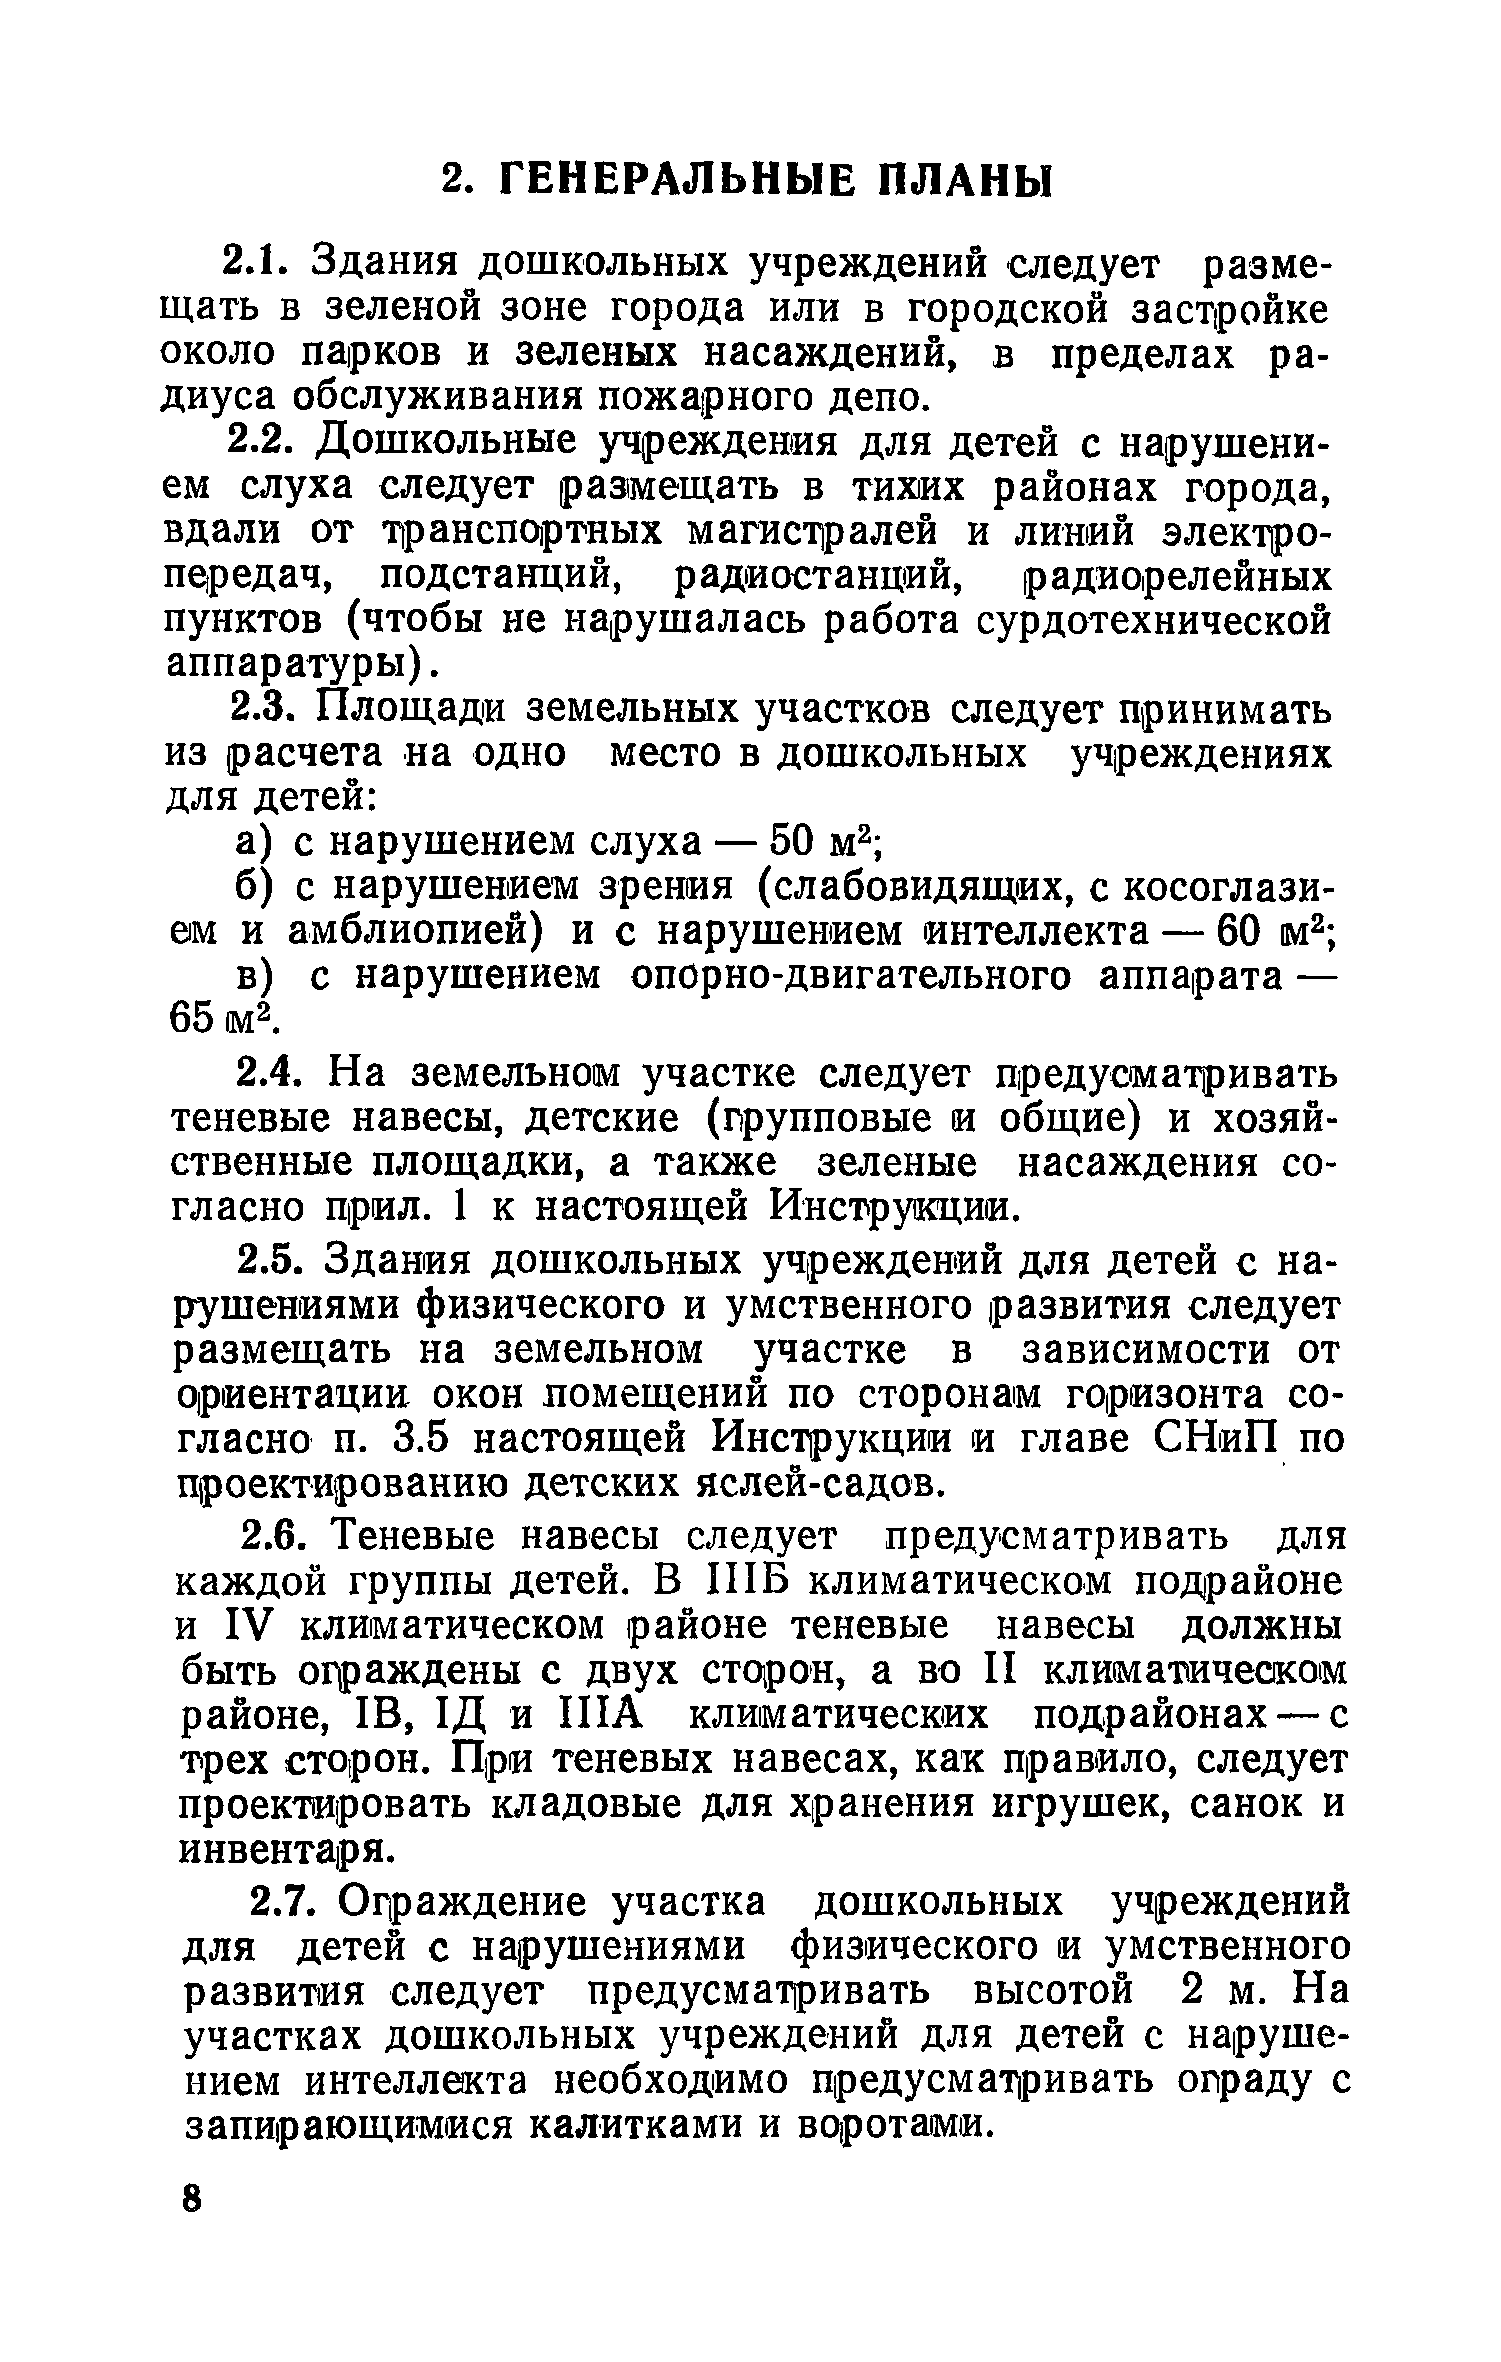 ВСН 28-76/Госгражданстрой